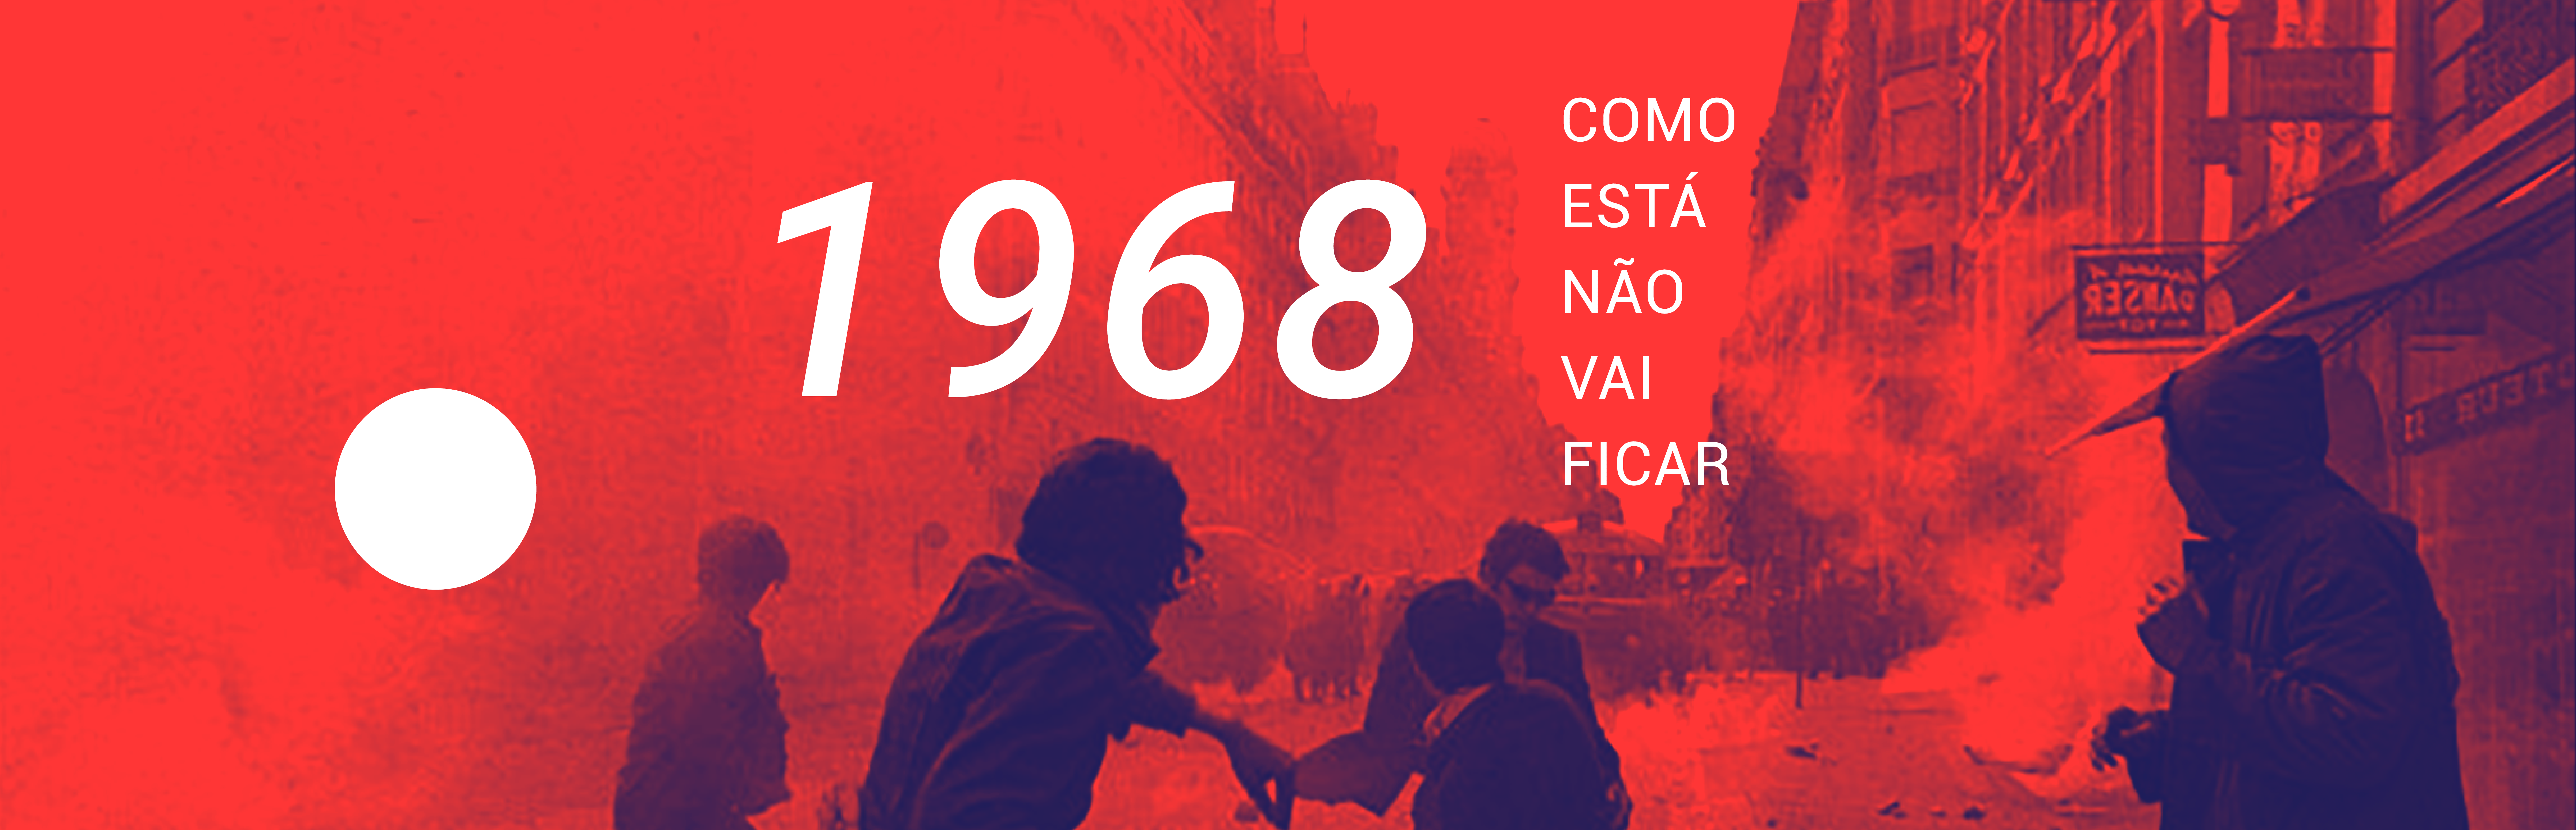 (Português) CINUSP relembra o intenso ano de 1968 em sua nova mostra